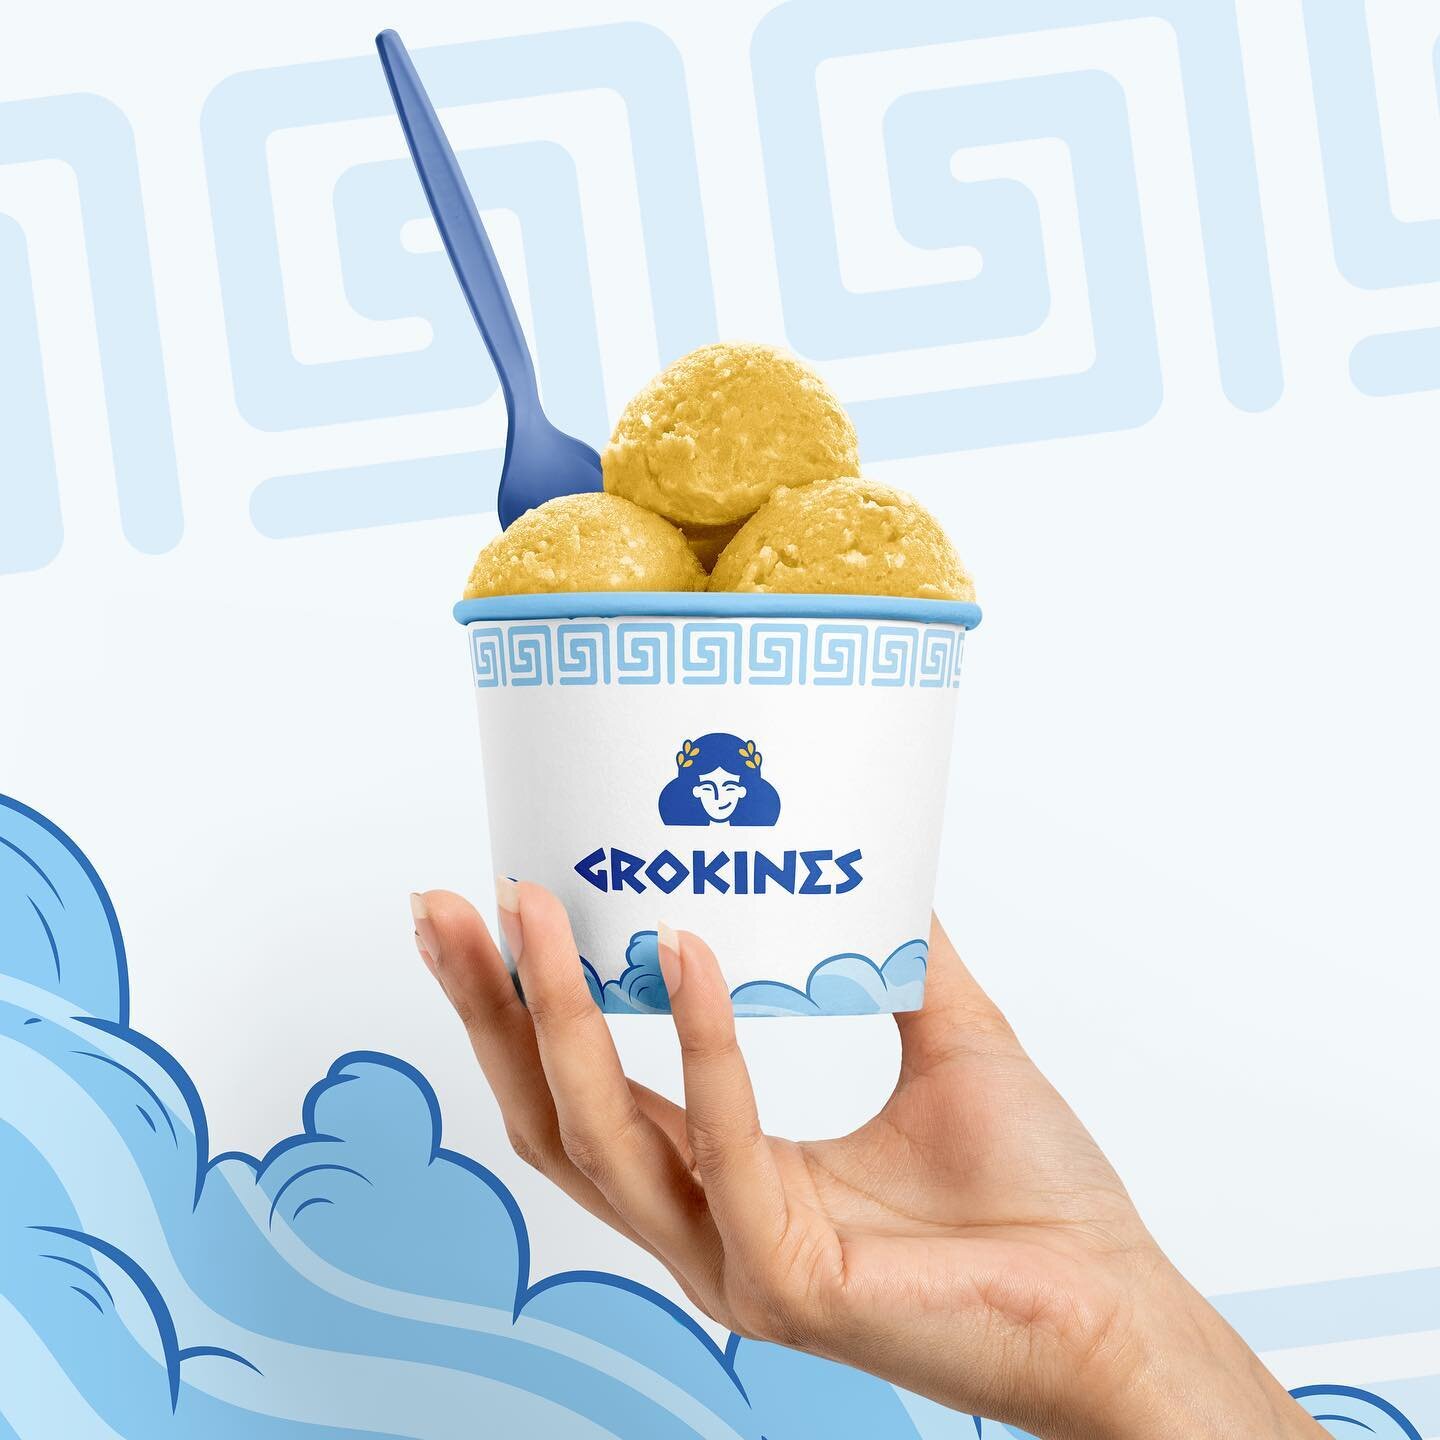 Branding voor ijssalon Grokines 🍦, waarbij een nieuwe Griekse godin tot leven komt! 🇬🇷

Een #branding #rebranding of #website nodig? Wij helpen je daarbij, let&rsquo;s meet up!